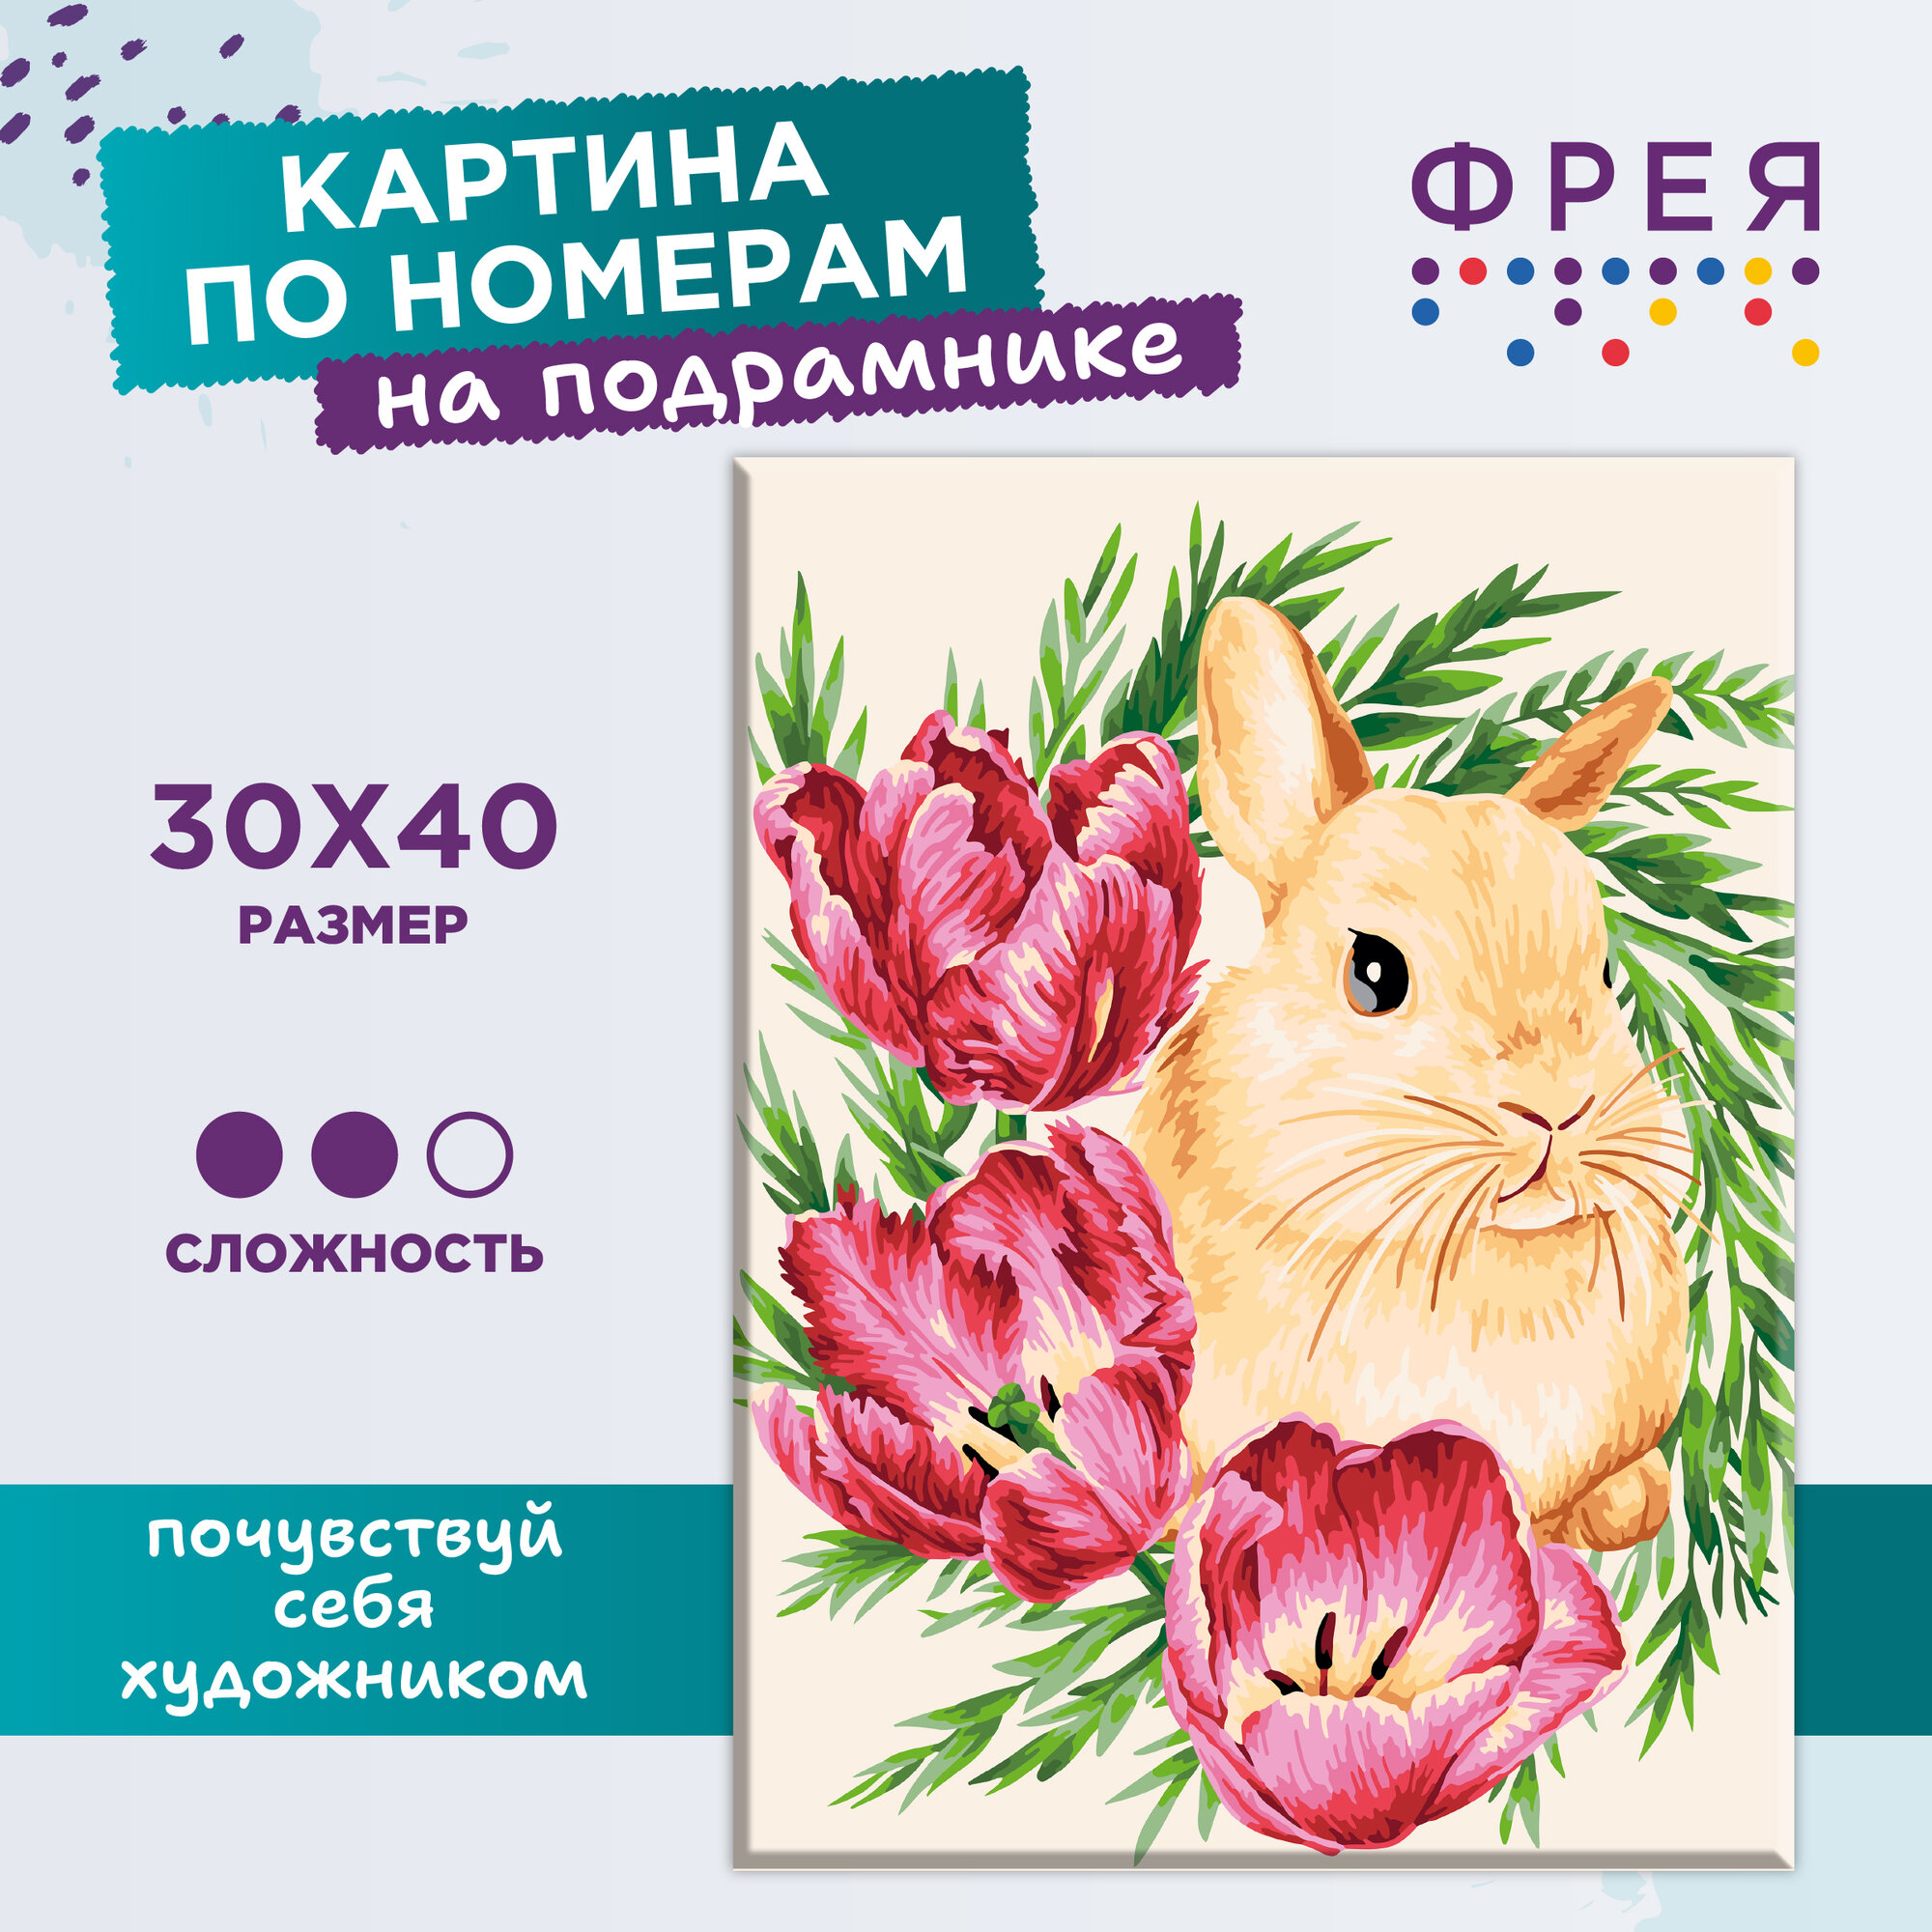 Картина по номерам с холстом на подрамнике "фрея" 40 x 30 см "Кролик в тюльпанах" PNB/PM-113